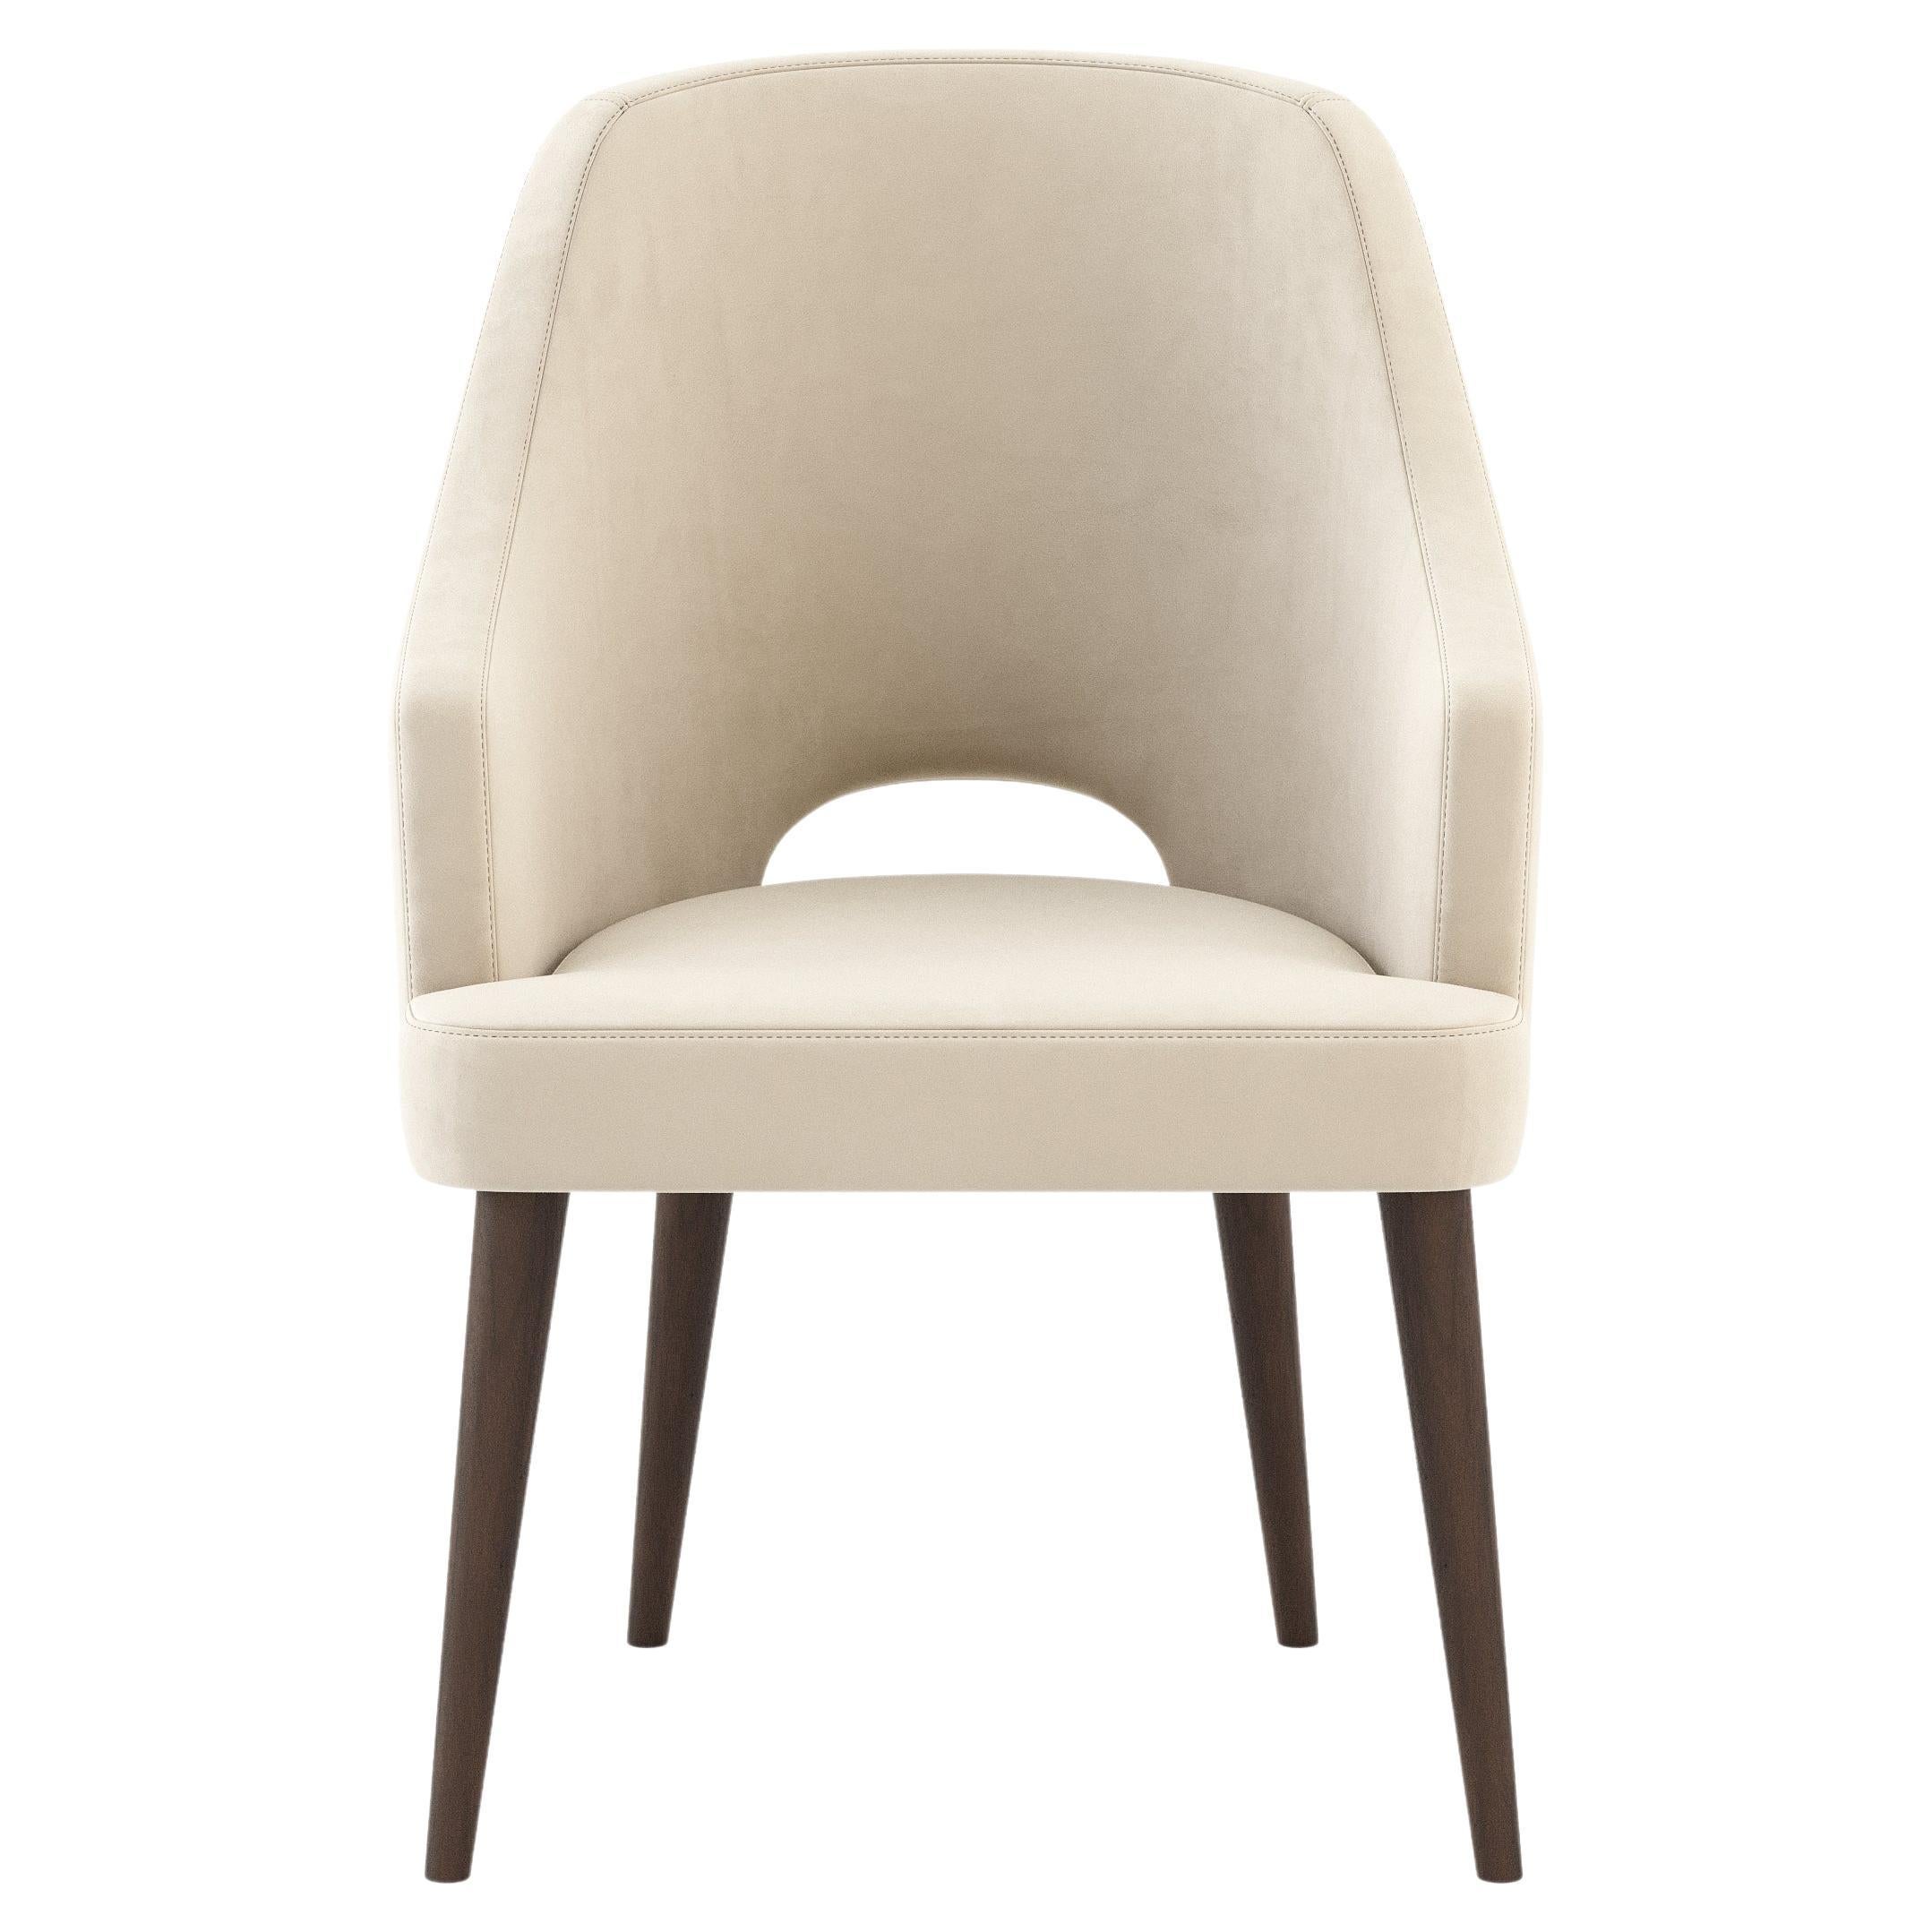 Die Donna Collection'S ist eine moderne Möbelserie, die Komfort, Stabilität und Anpassungsfähigkeit an Ihre Bedürfnisse bietet. Jedes Stück dieser Collection'S wurde sorgfältig gefertigt, um Komfort, Zweckmäßigkeit und Stil in Ihr Zuhause zu